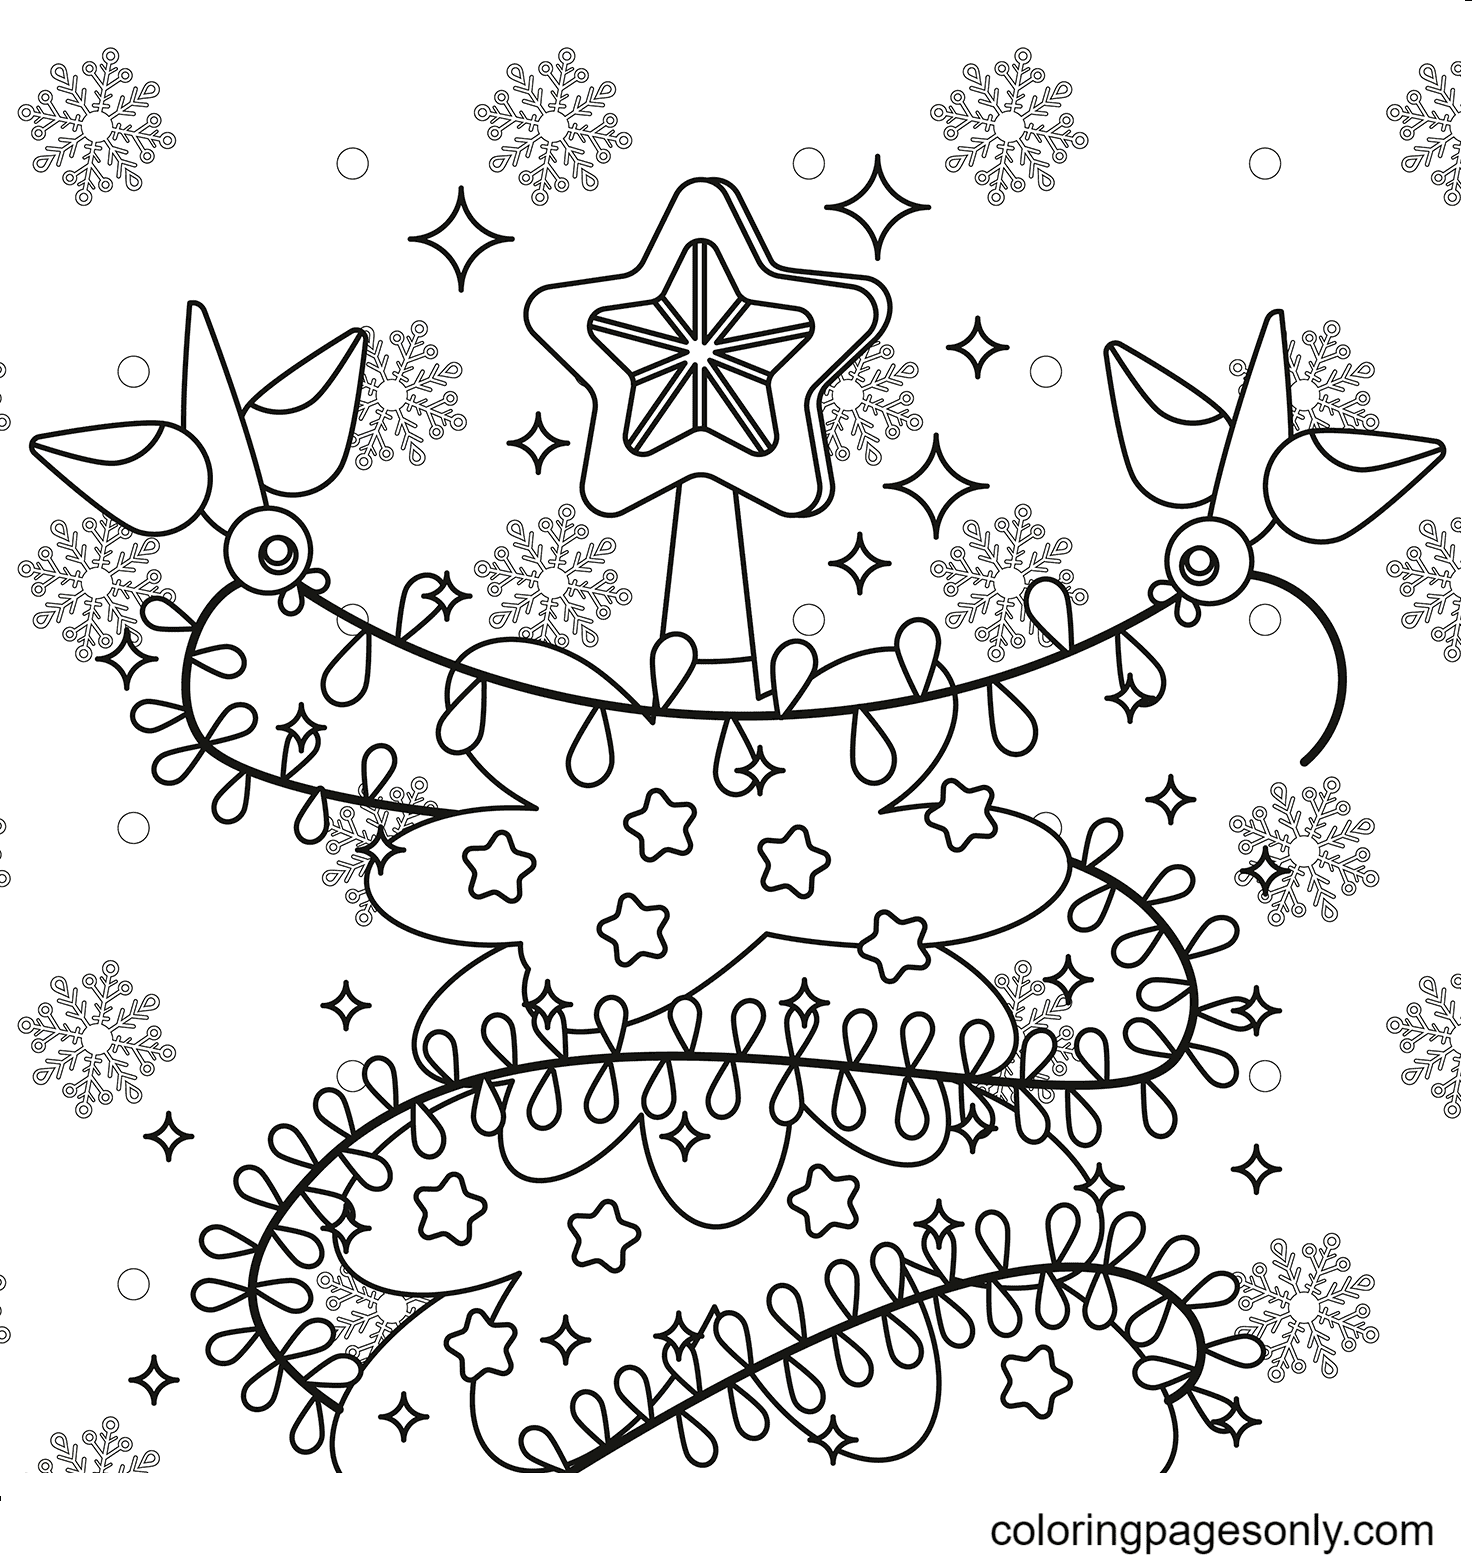 Christmas Lights Free Printable Image For Kids Coloring Page